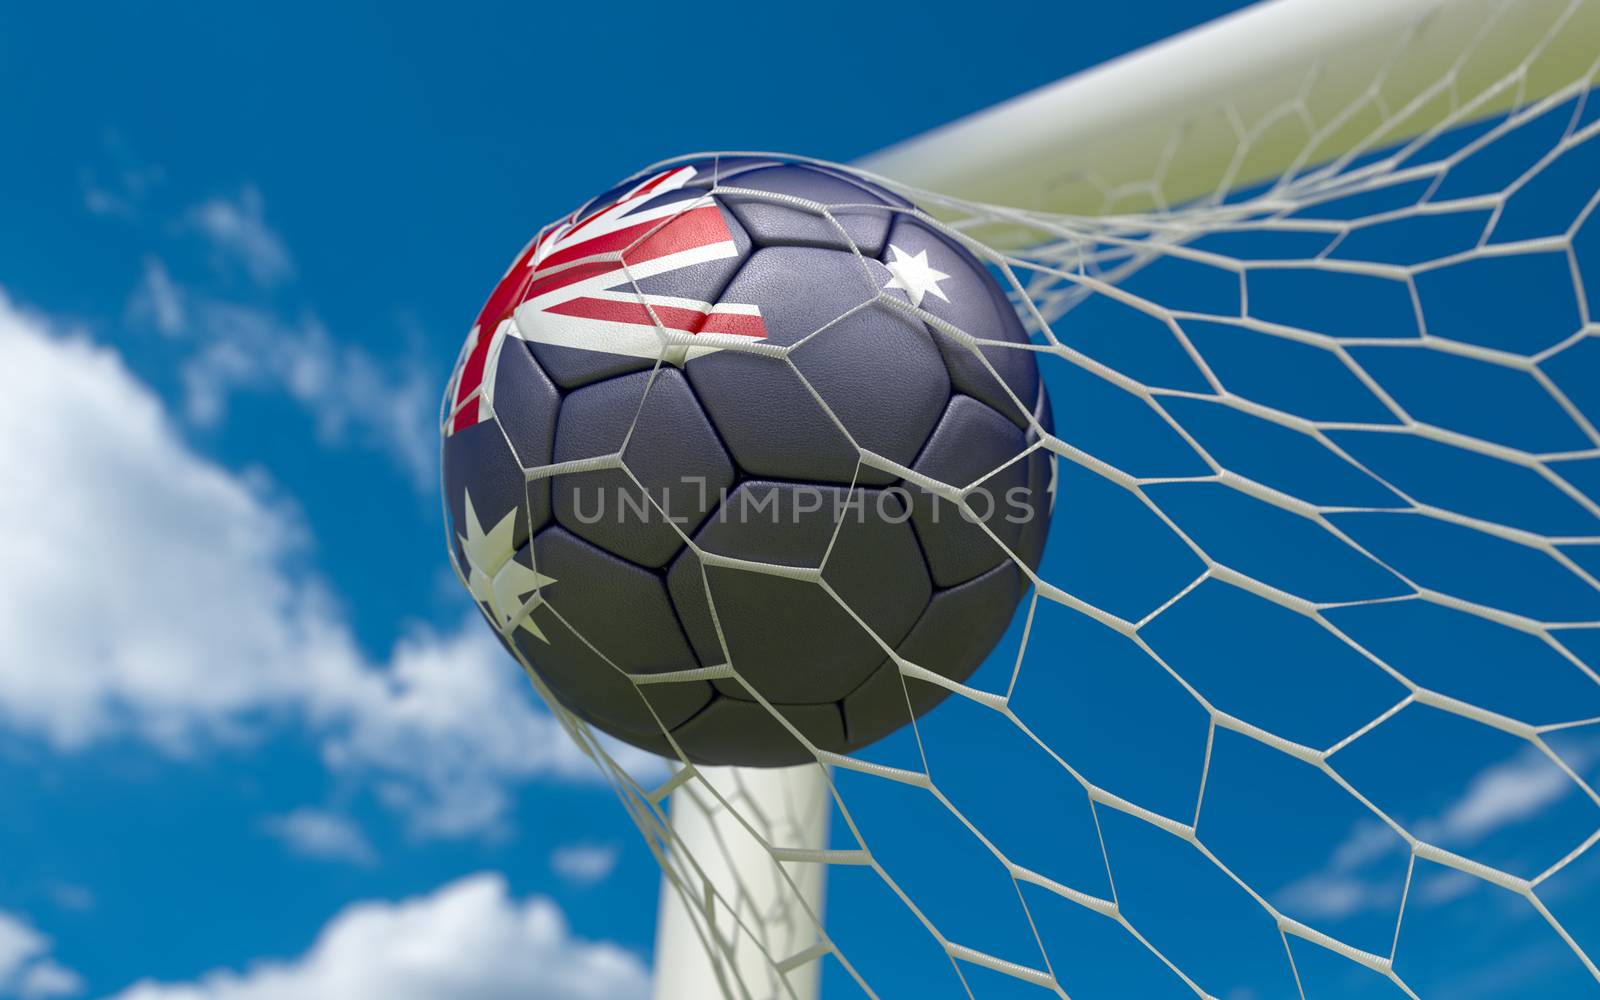 Australia flag and soccer ball in goal net by Barbraford